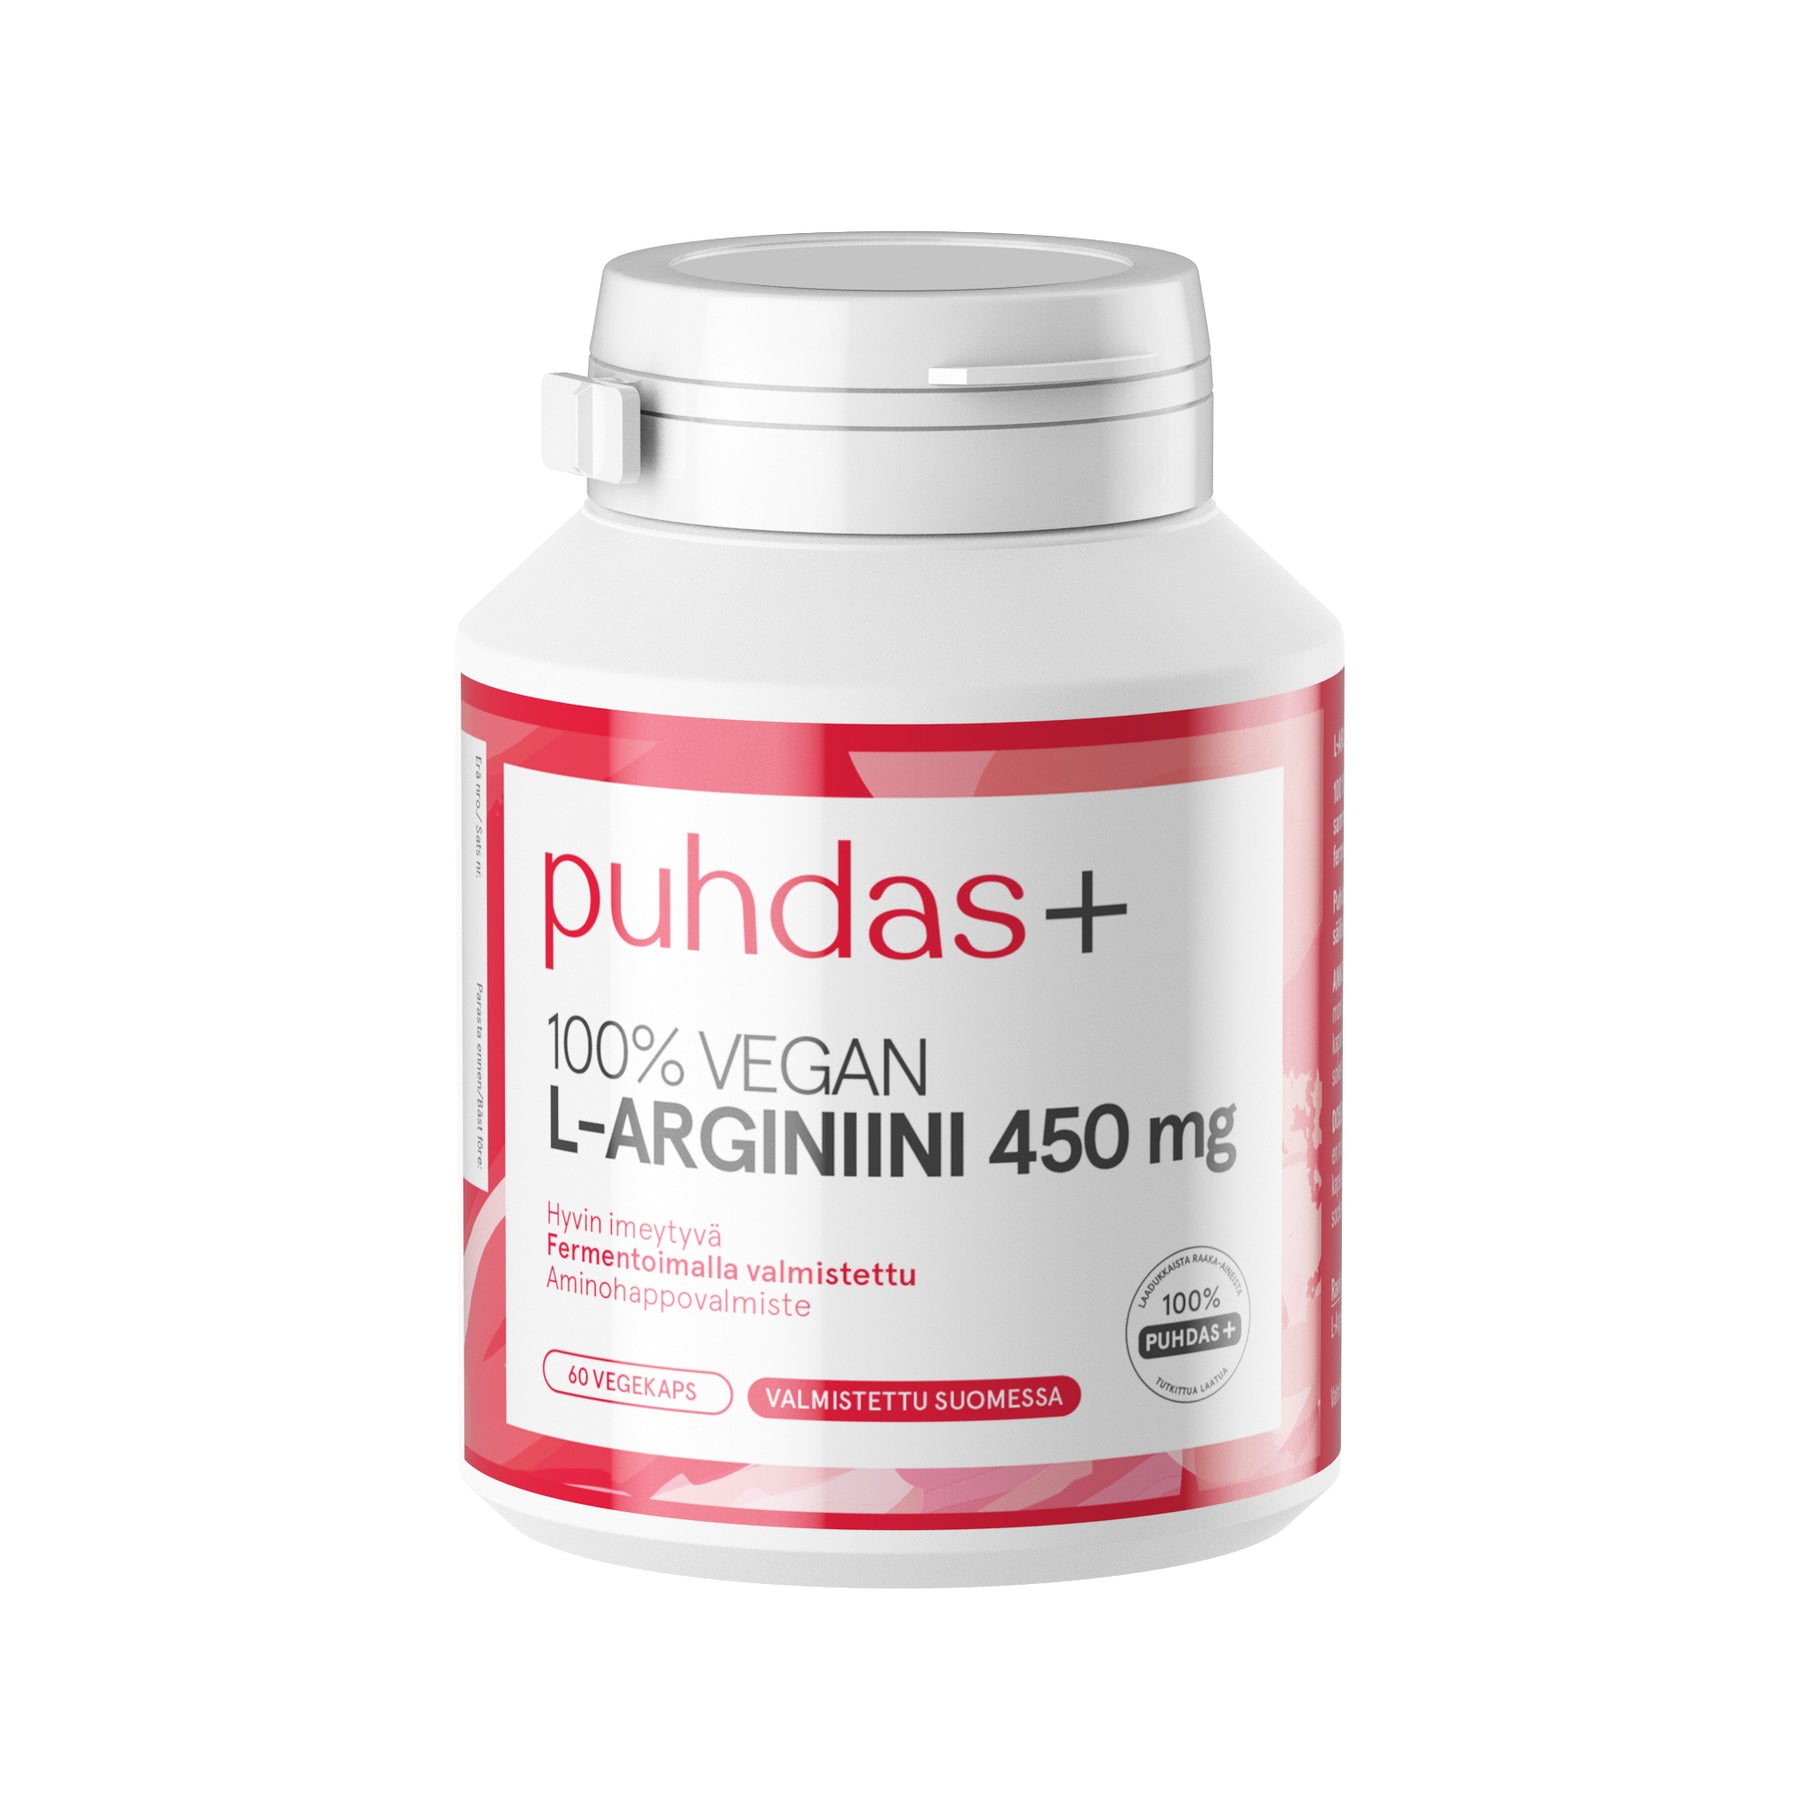 Puhdas+ L-Arginiini 450 mg 60 vegekaps.